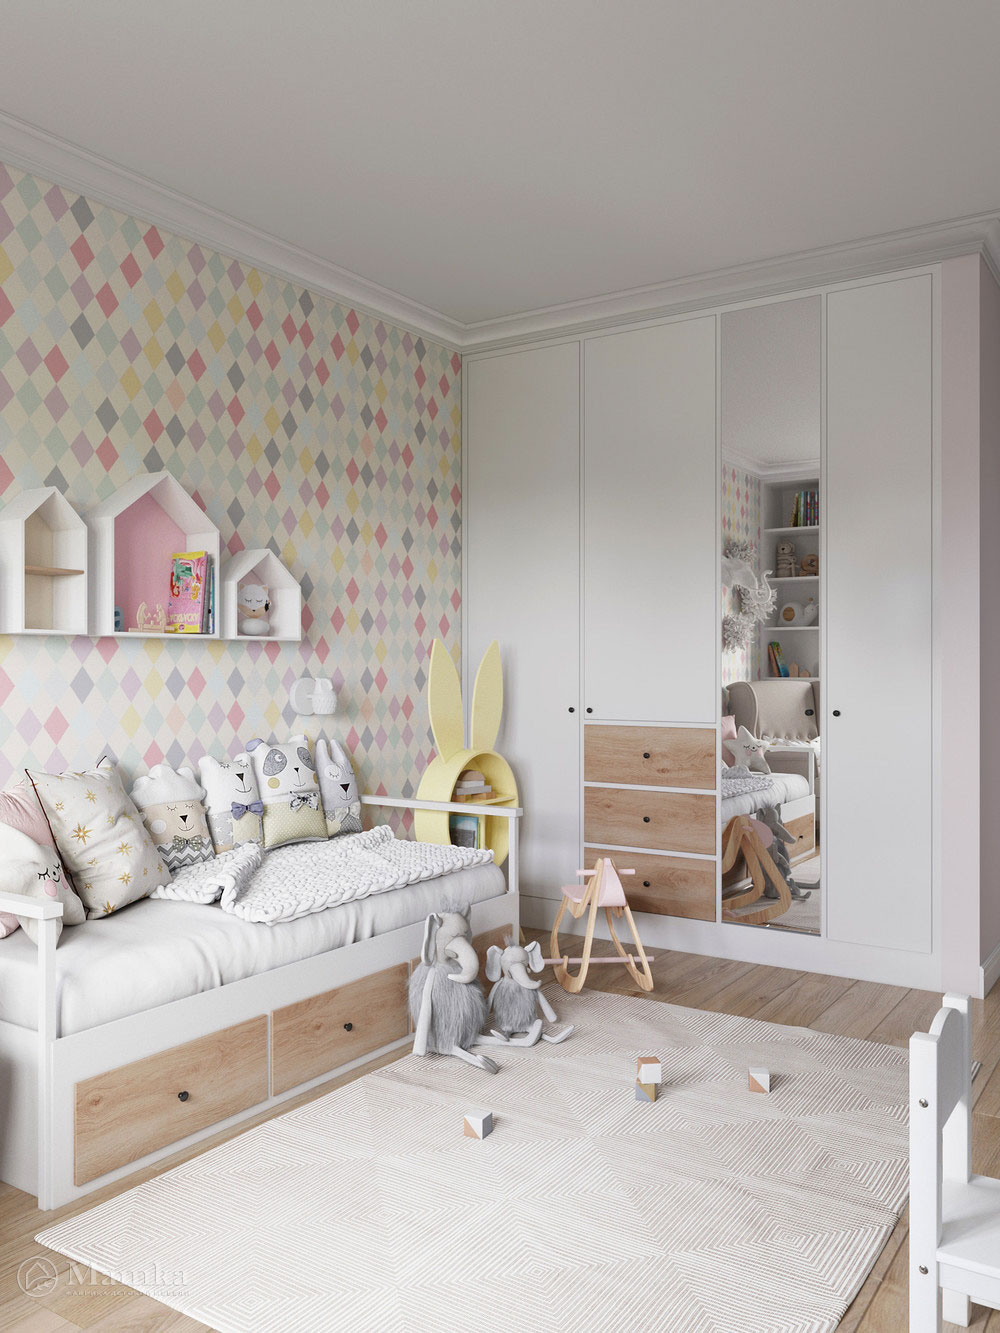 Необычный дизайн детской комнаты для девочки